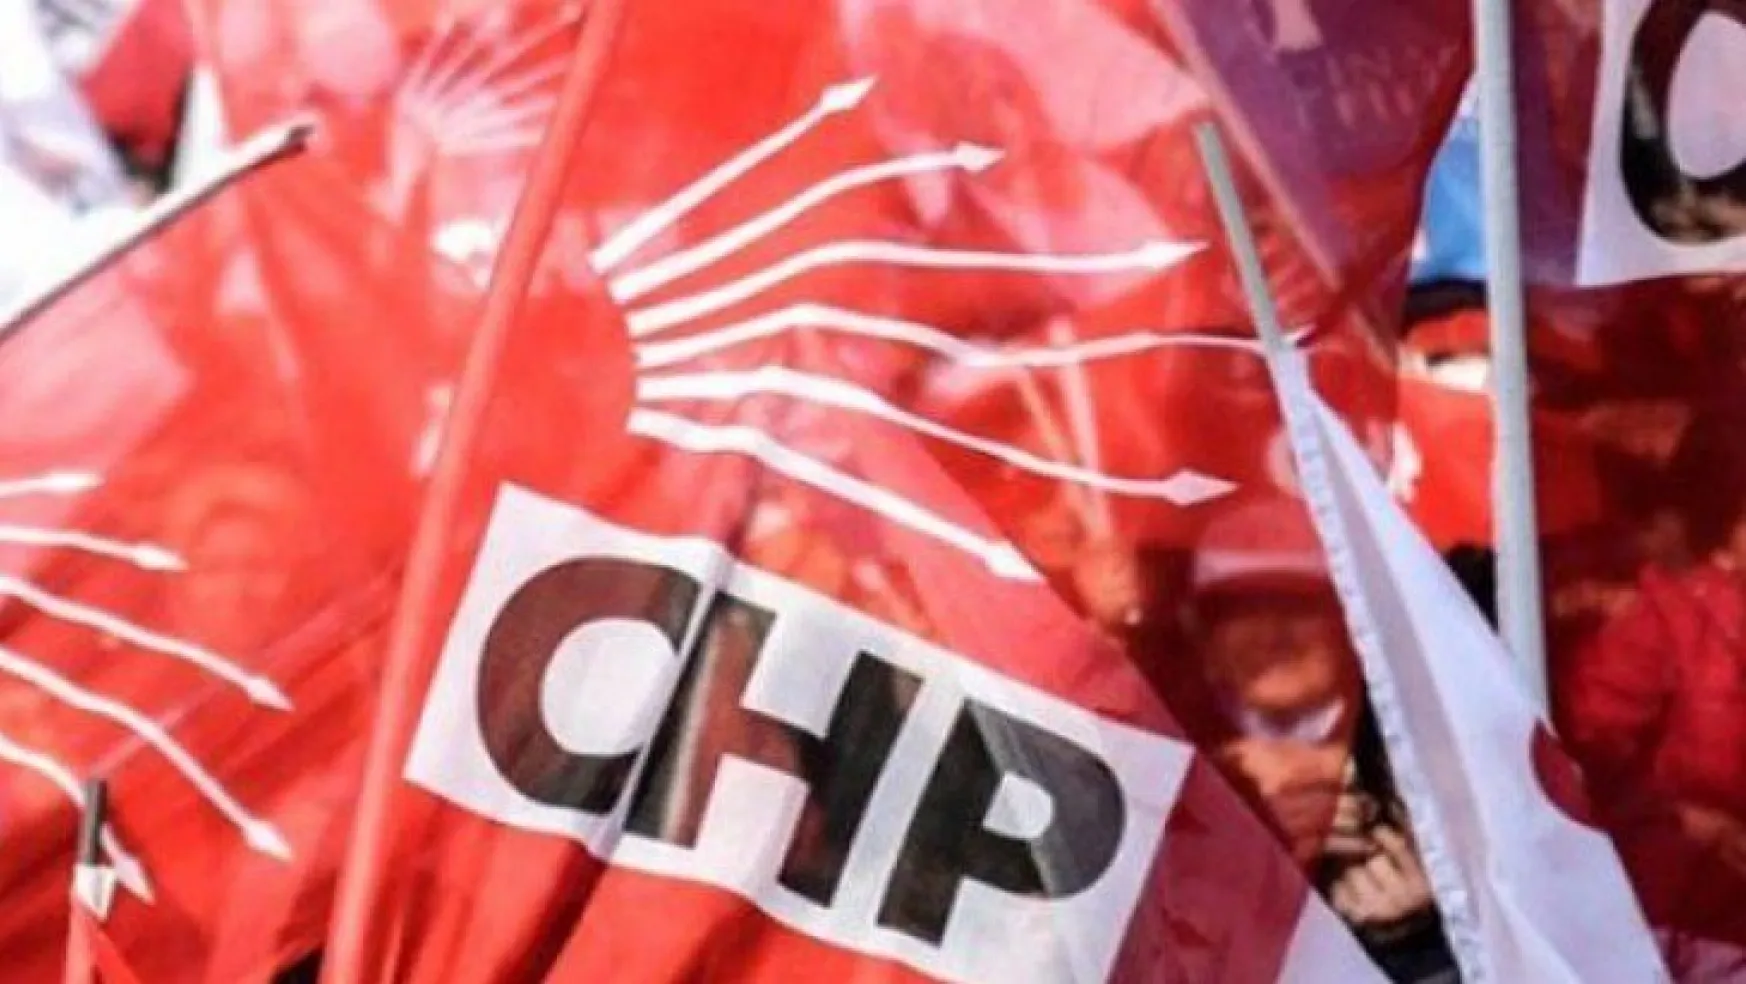 CHP İzmit'te görevlendirmeler yapıldı